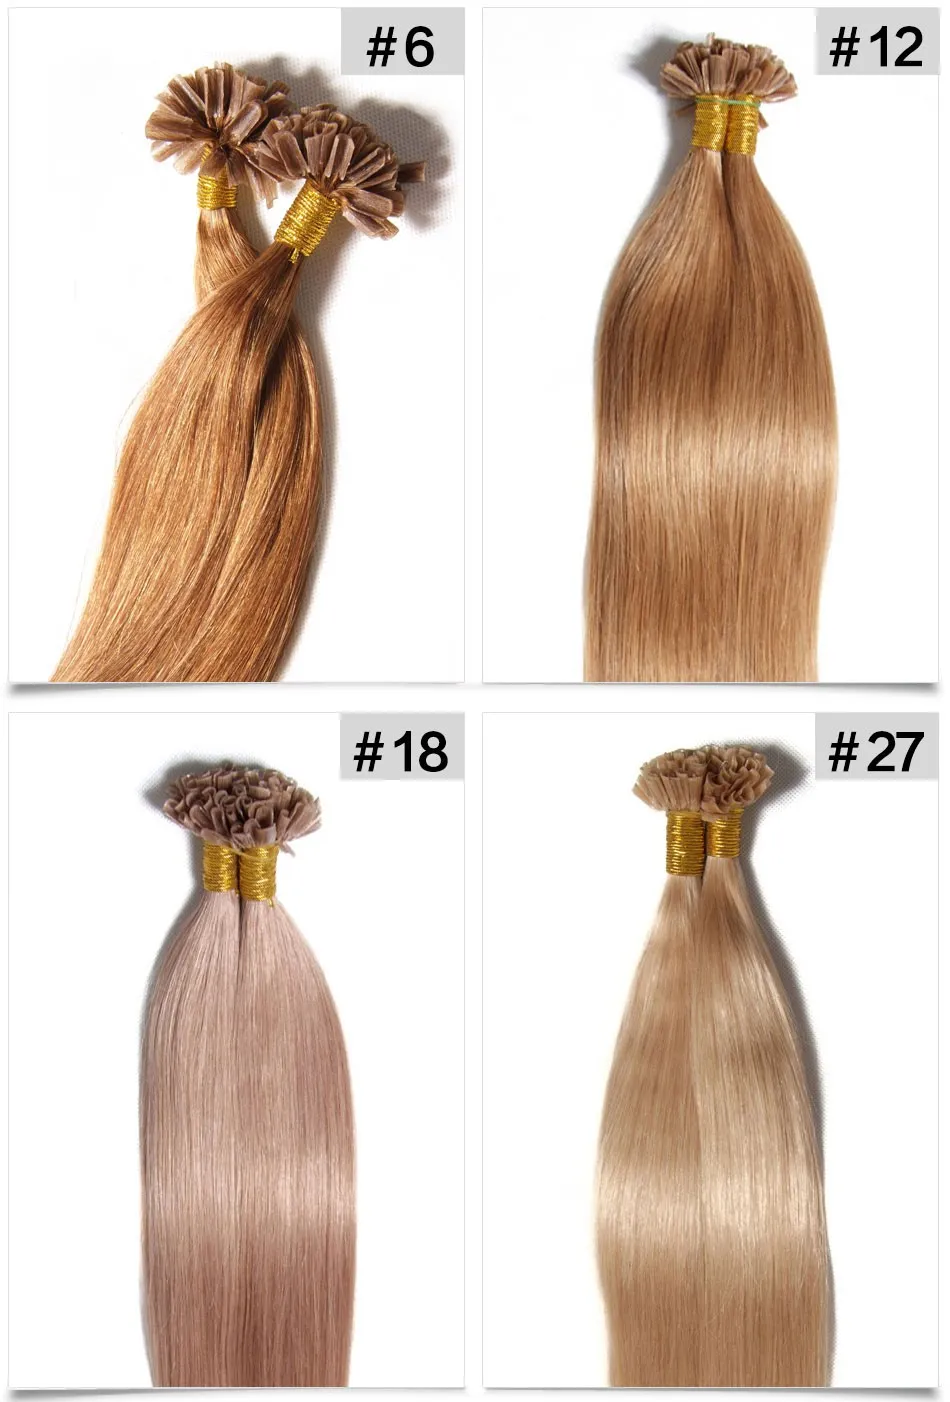 Avant de cheveux italien Kératine Fusion de coiffure Brésilienne Cheveux humains 1G / Strand / # 12 # 18 # 27